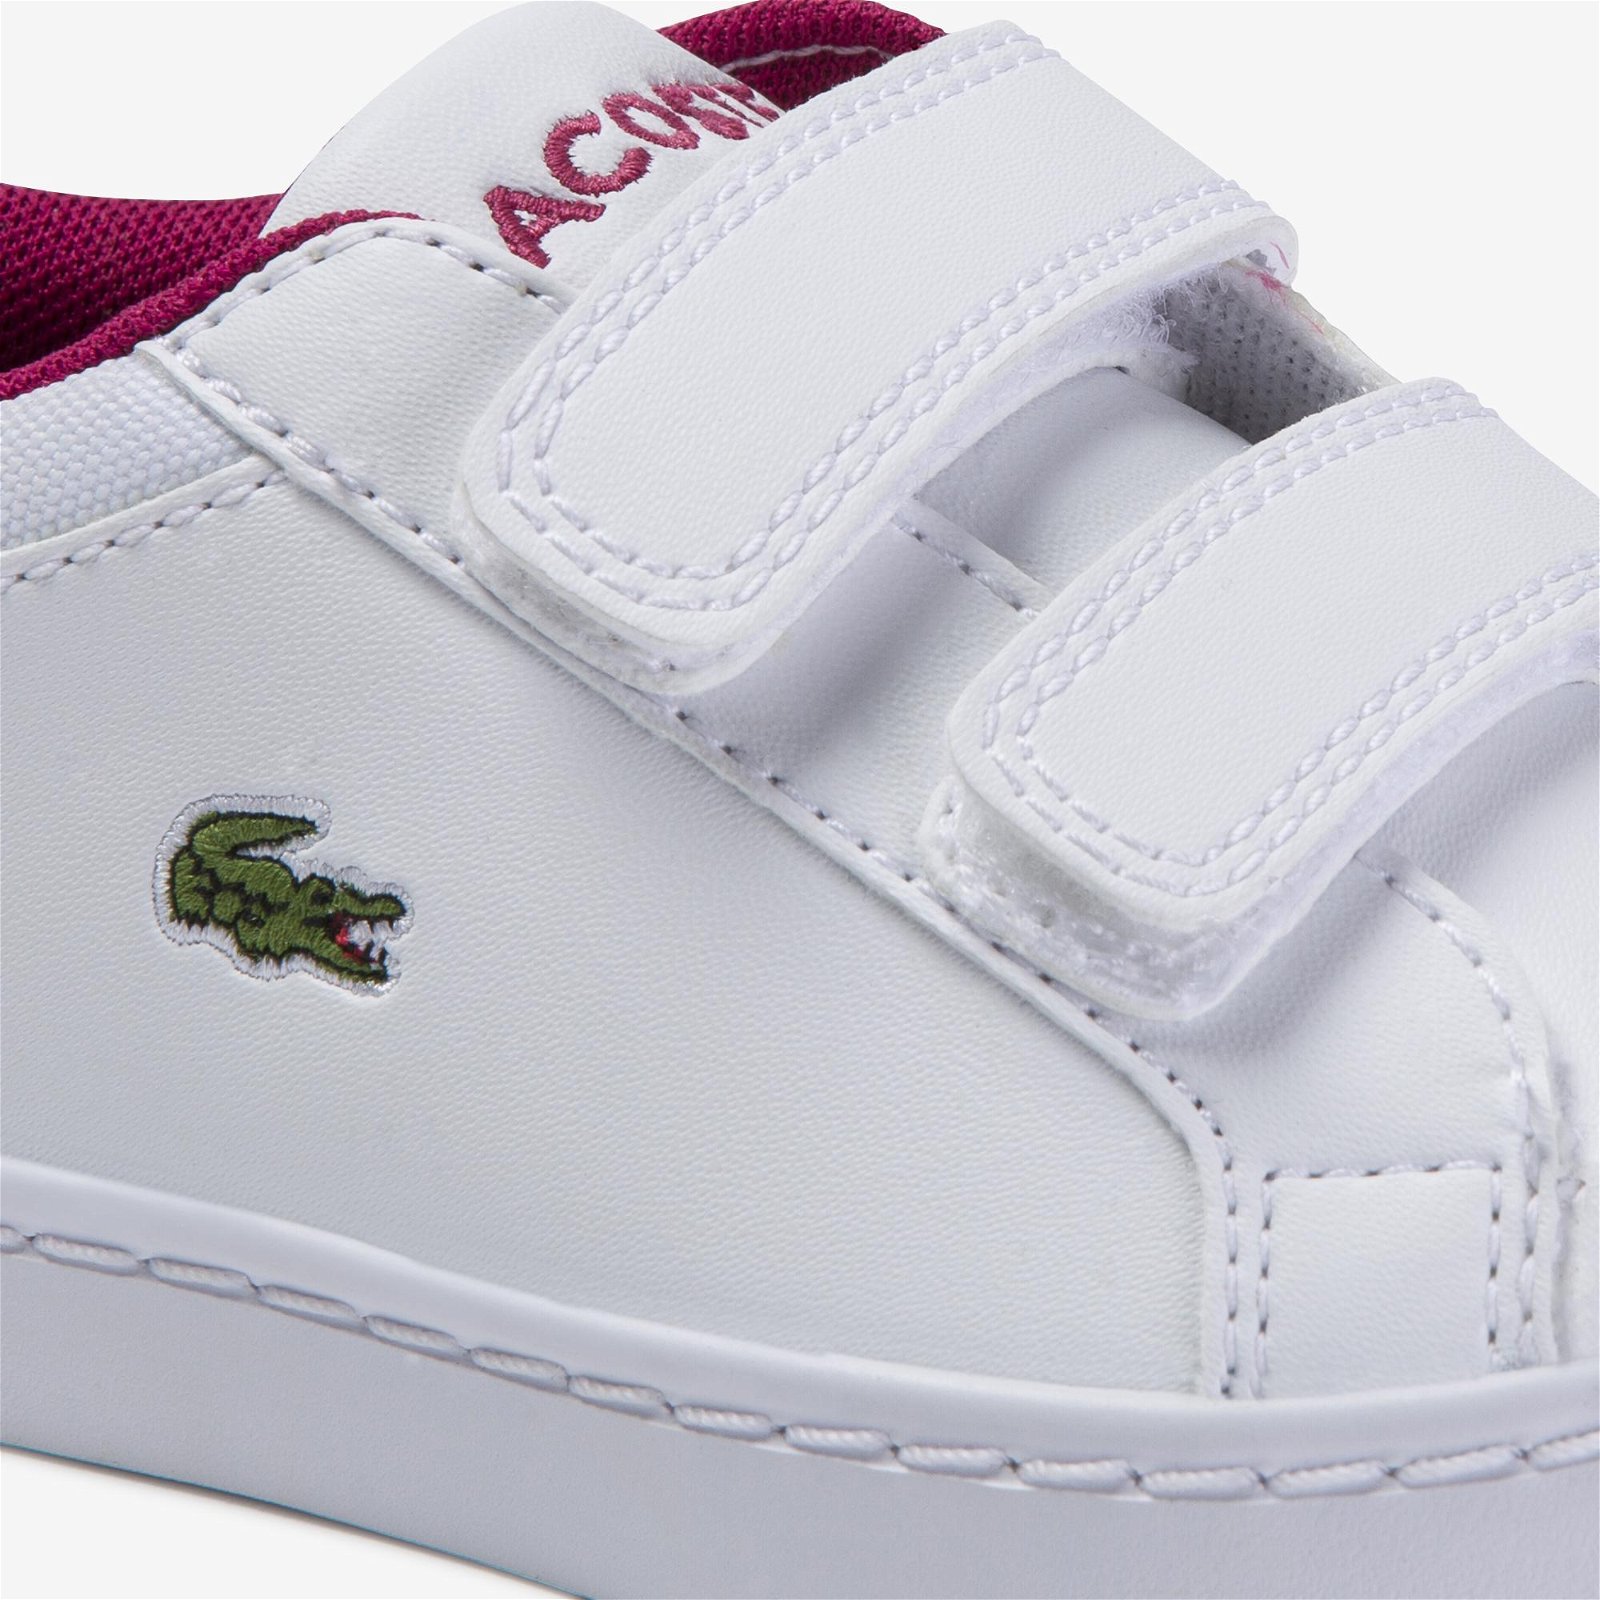 Lacoste Straightset 120 1 Cui Çocuk Beyaz - Koyu Pembe Sneaker